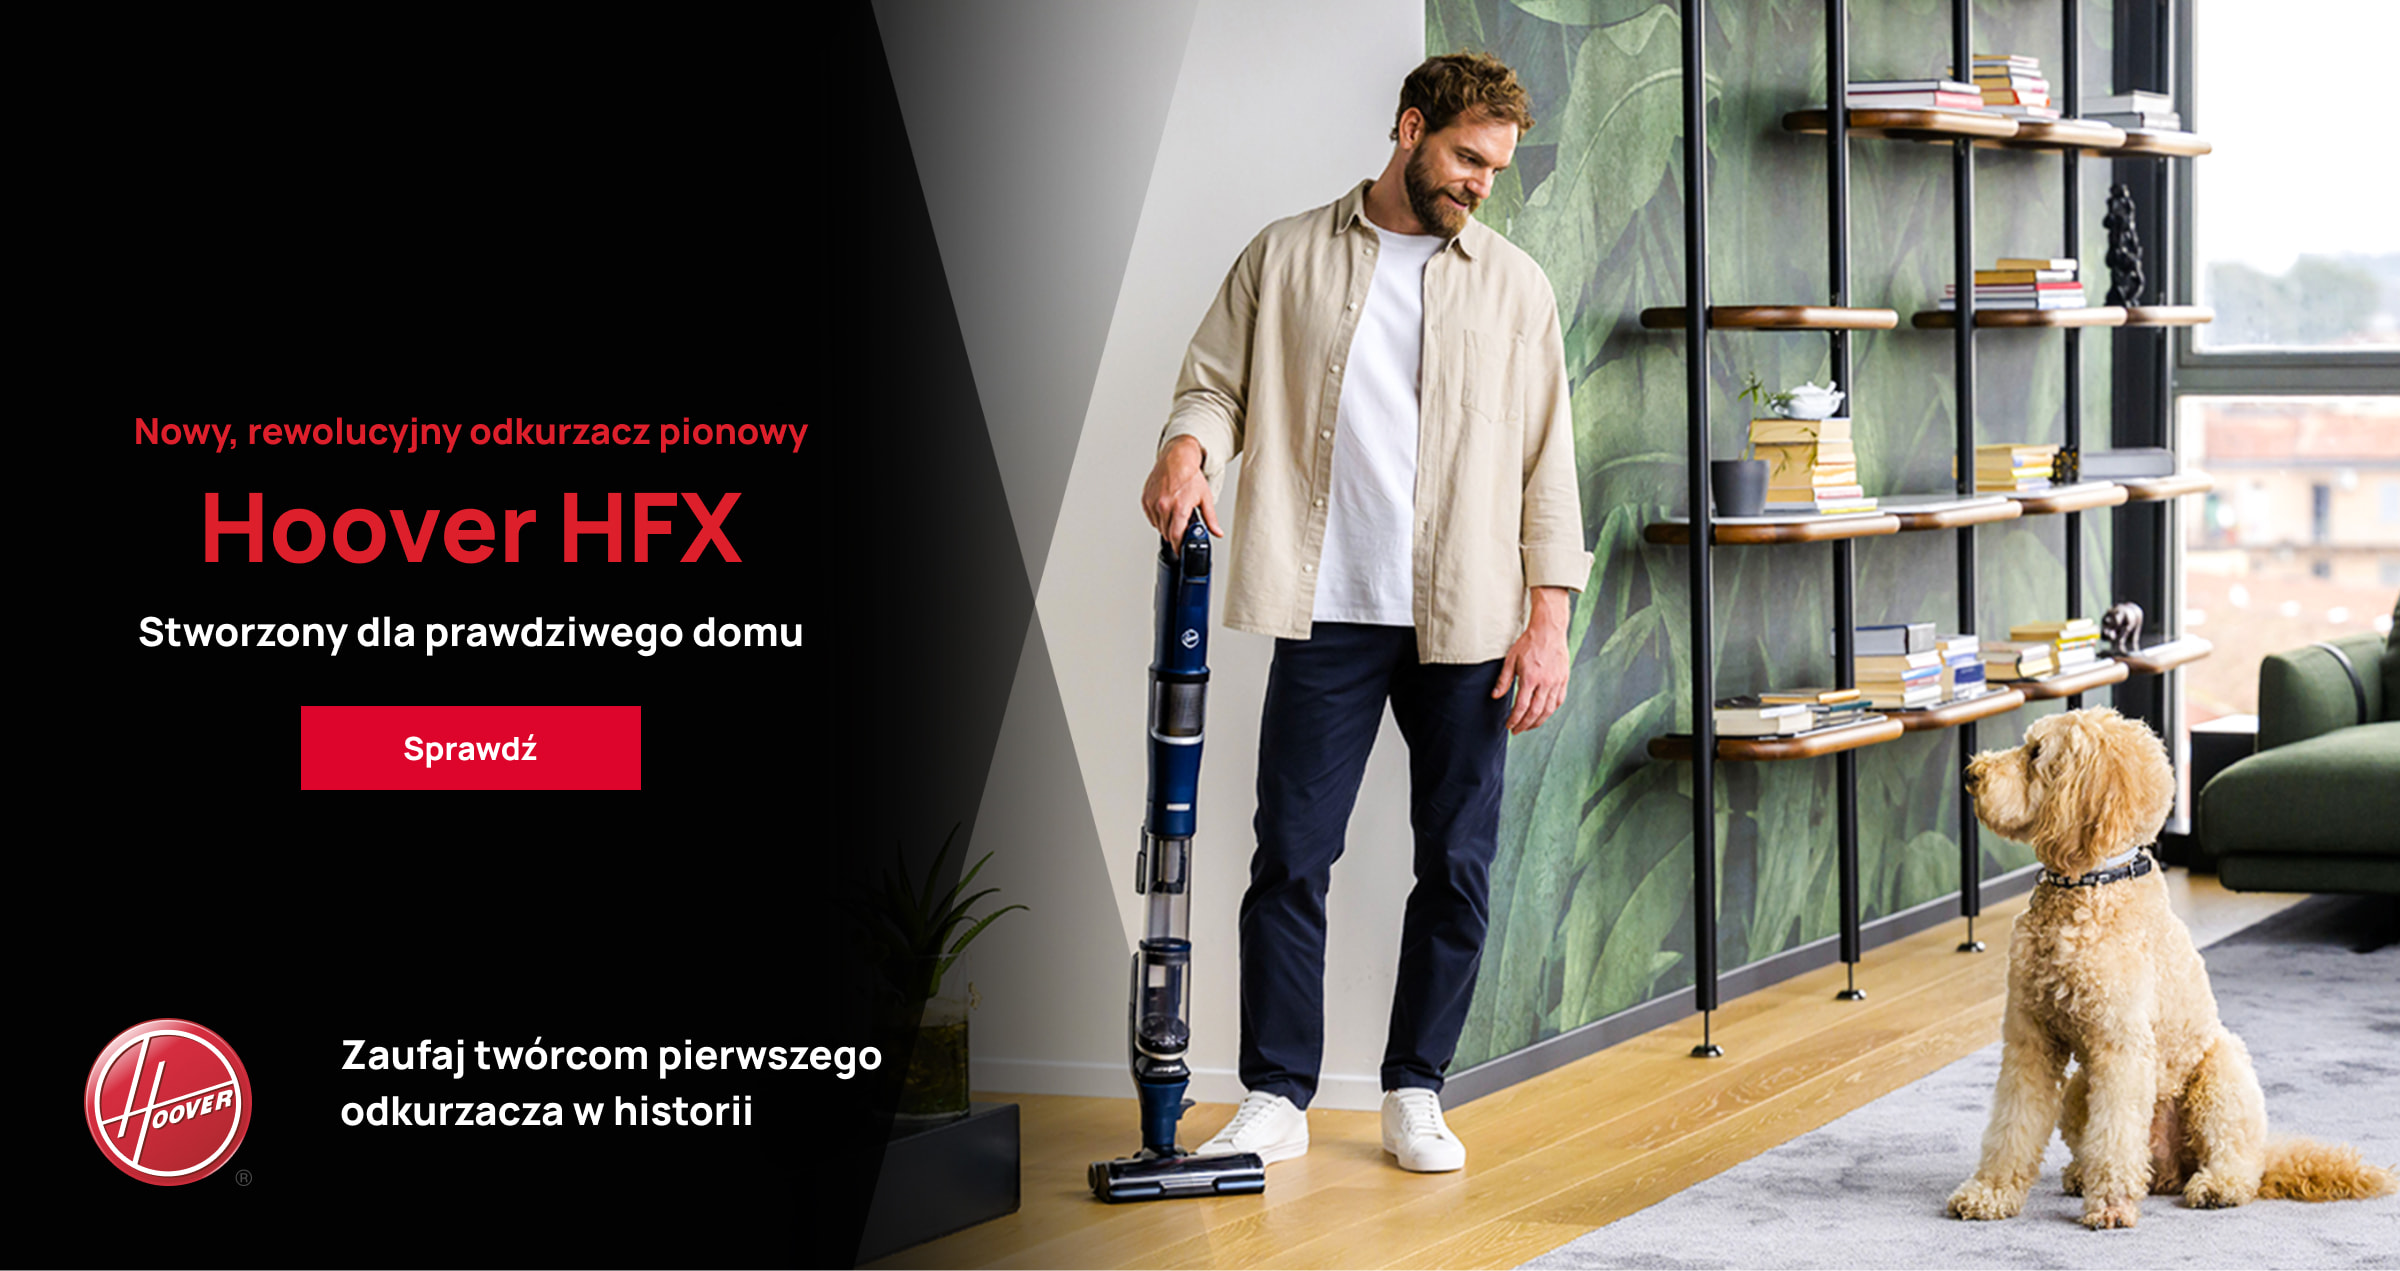 Hoover HFX vacuum cleaner